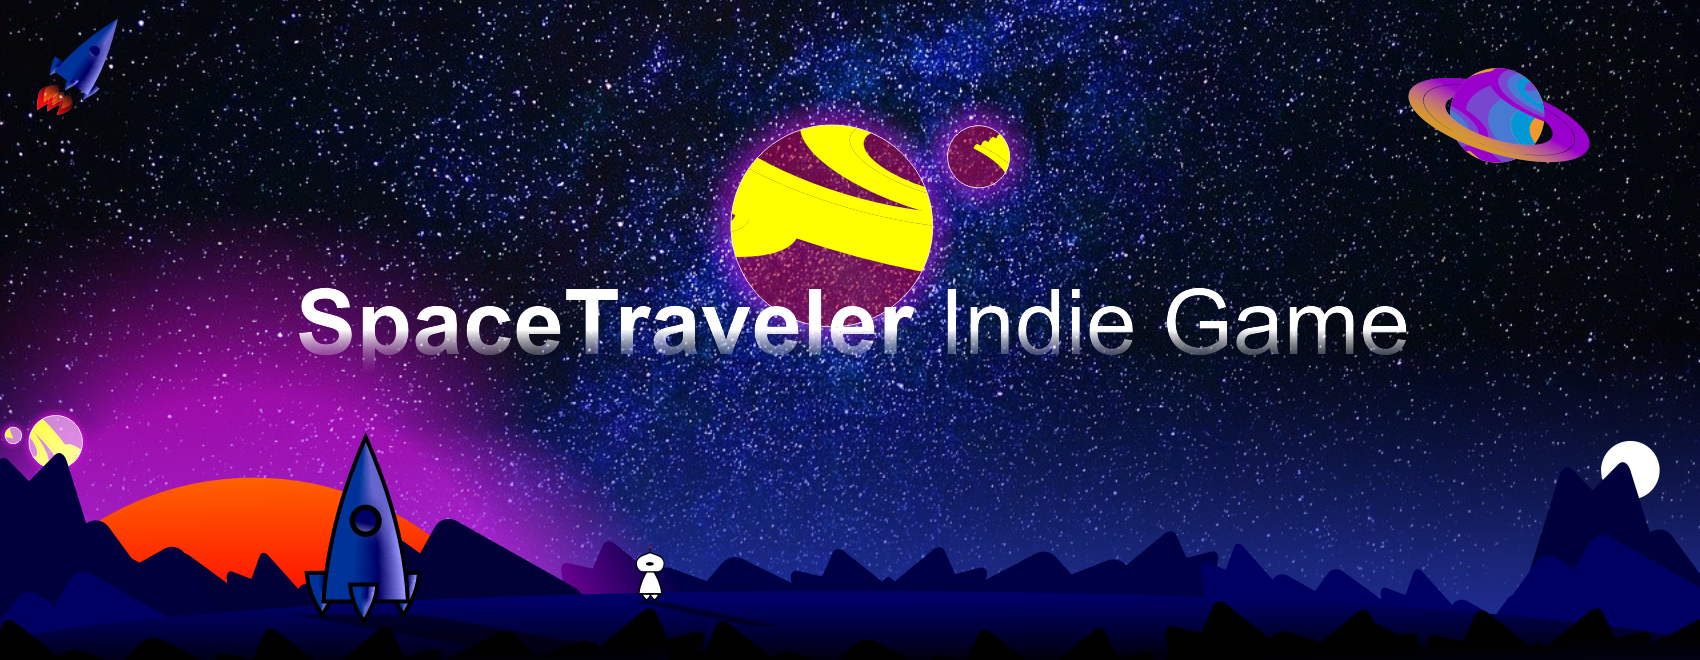 Space Traveler Indie Game